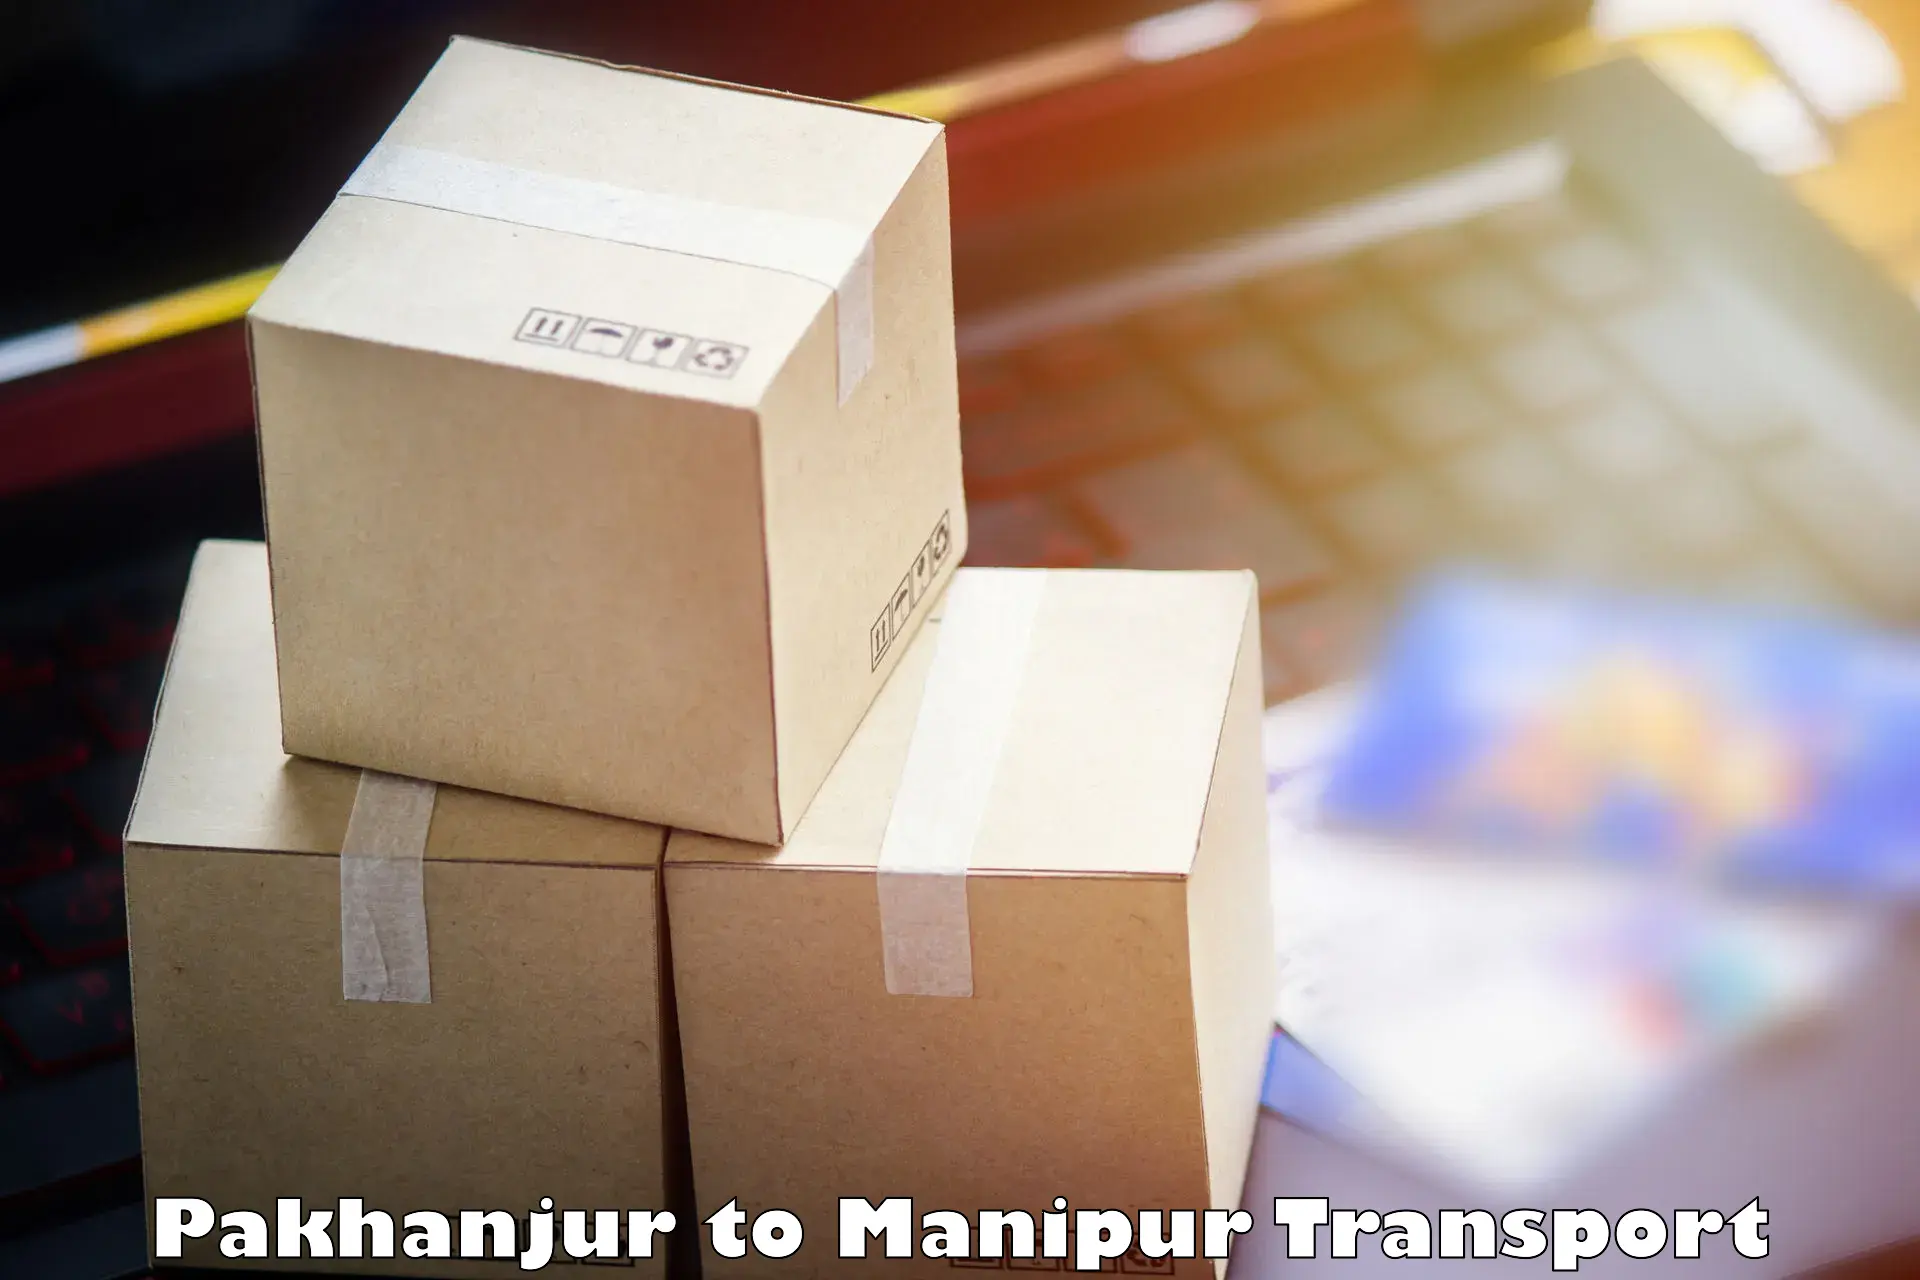 Furniture transport service Pakhanjur to Imphal